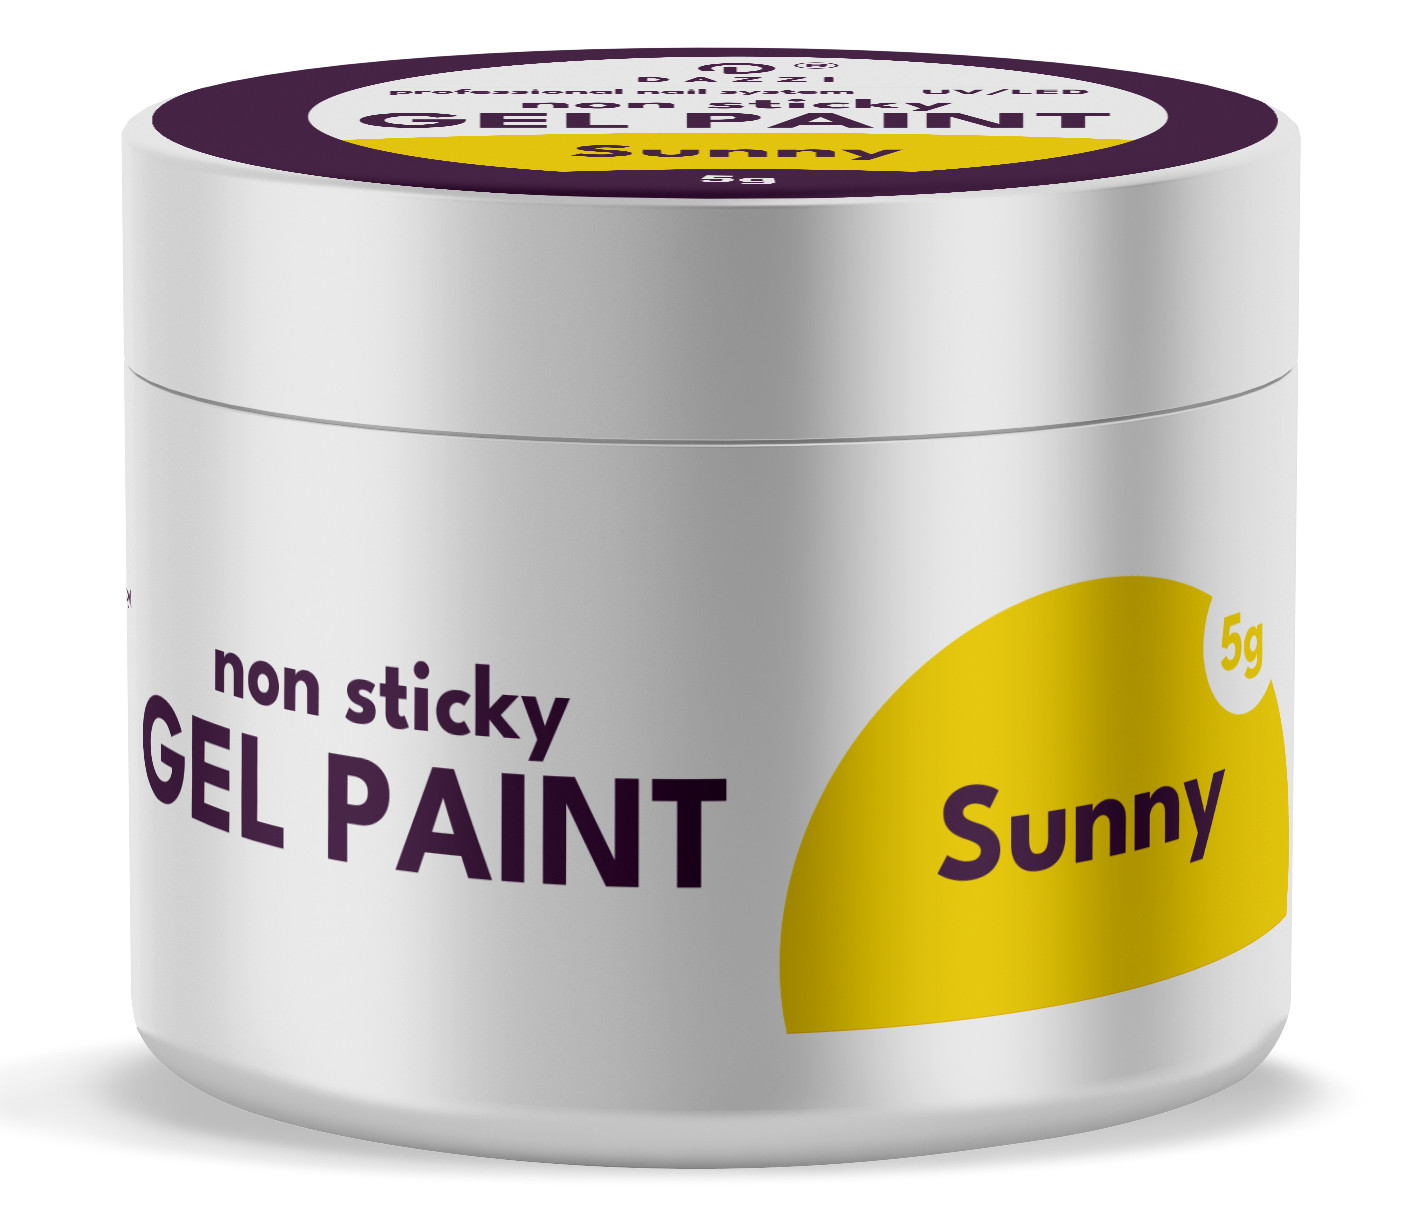 Gel Paint "Sunny" , 5gr